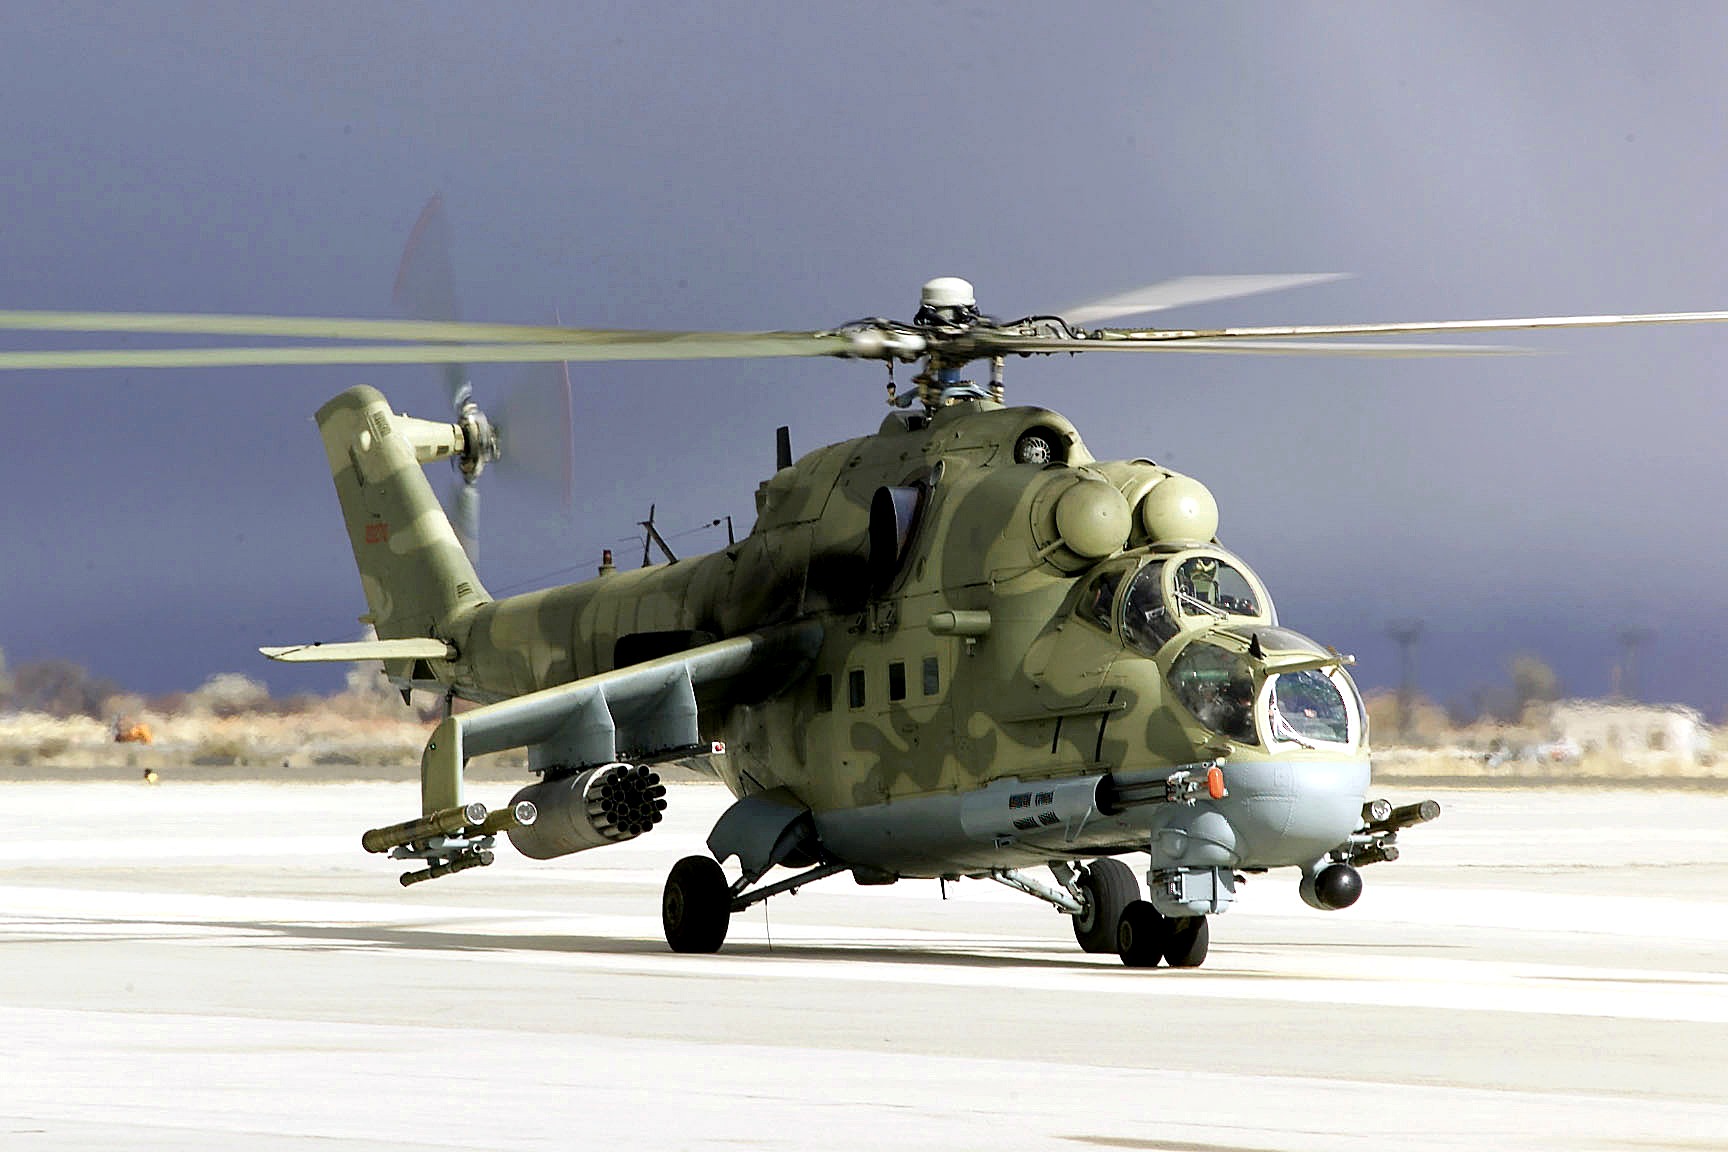 Mi-24_Desert_Rescue.jpg